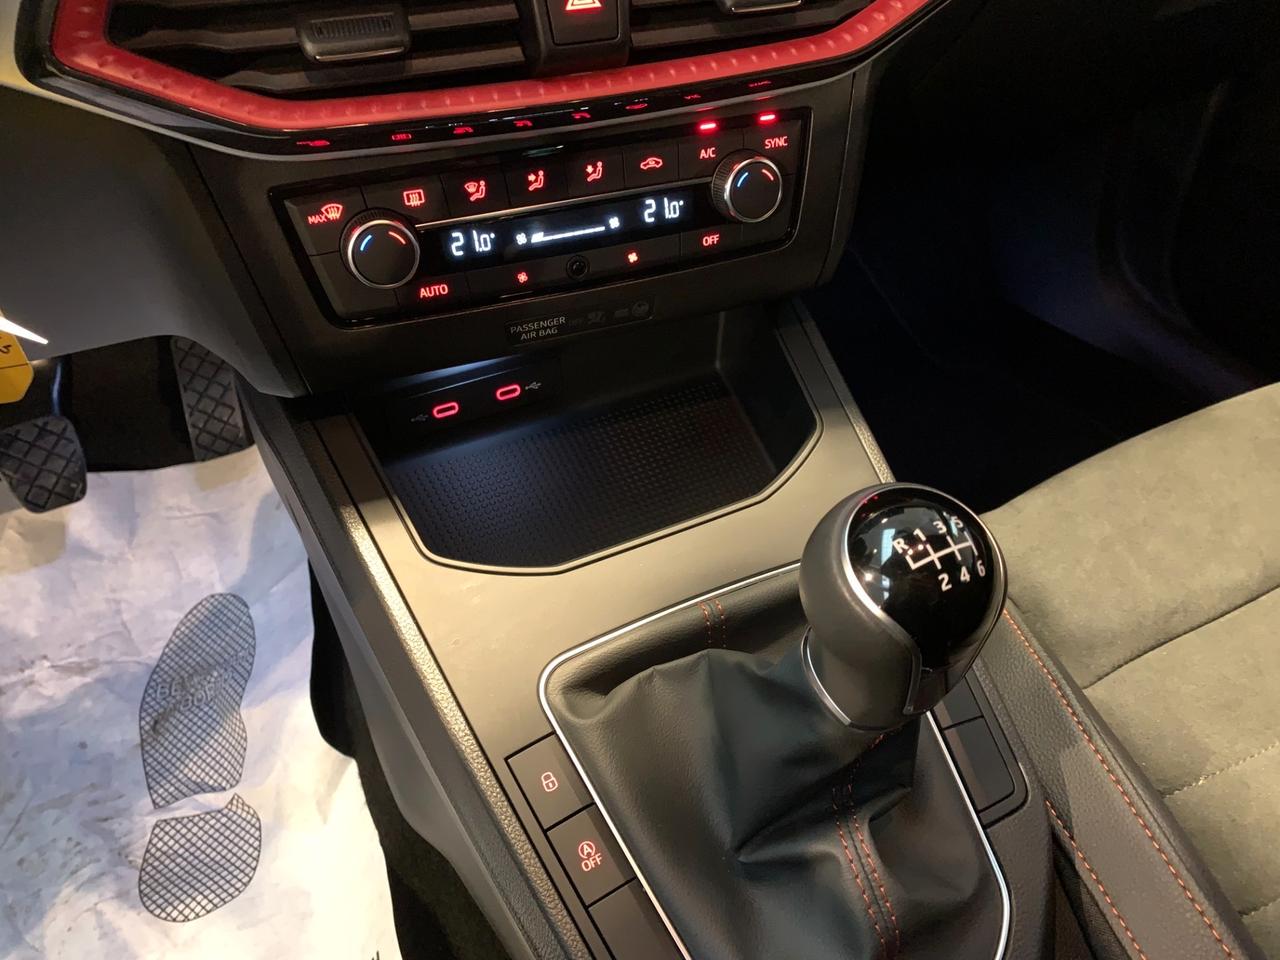 Seat Ibiza 1.0 TGI 5 porte FR